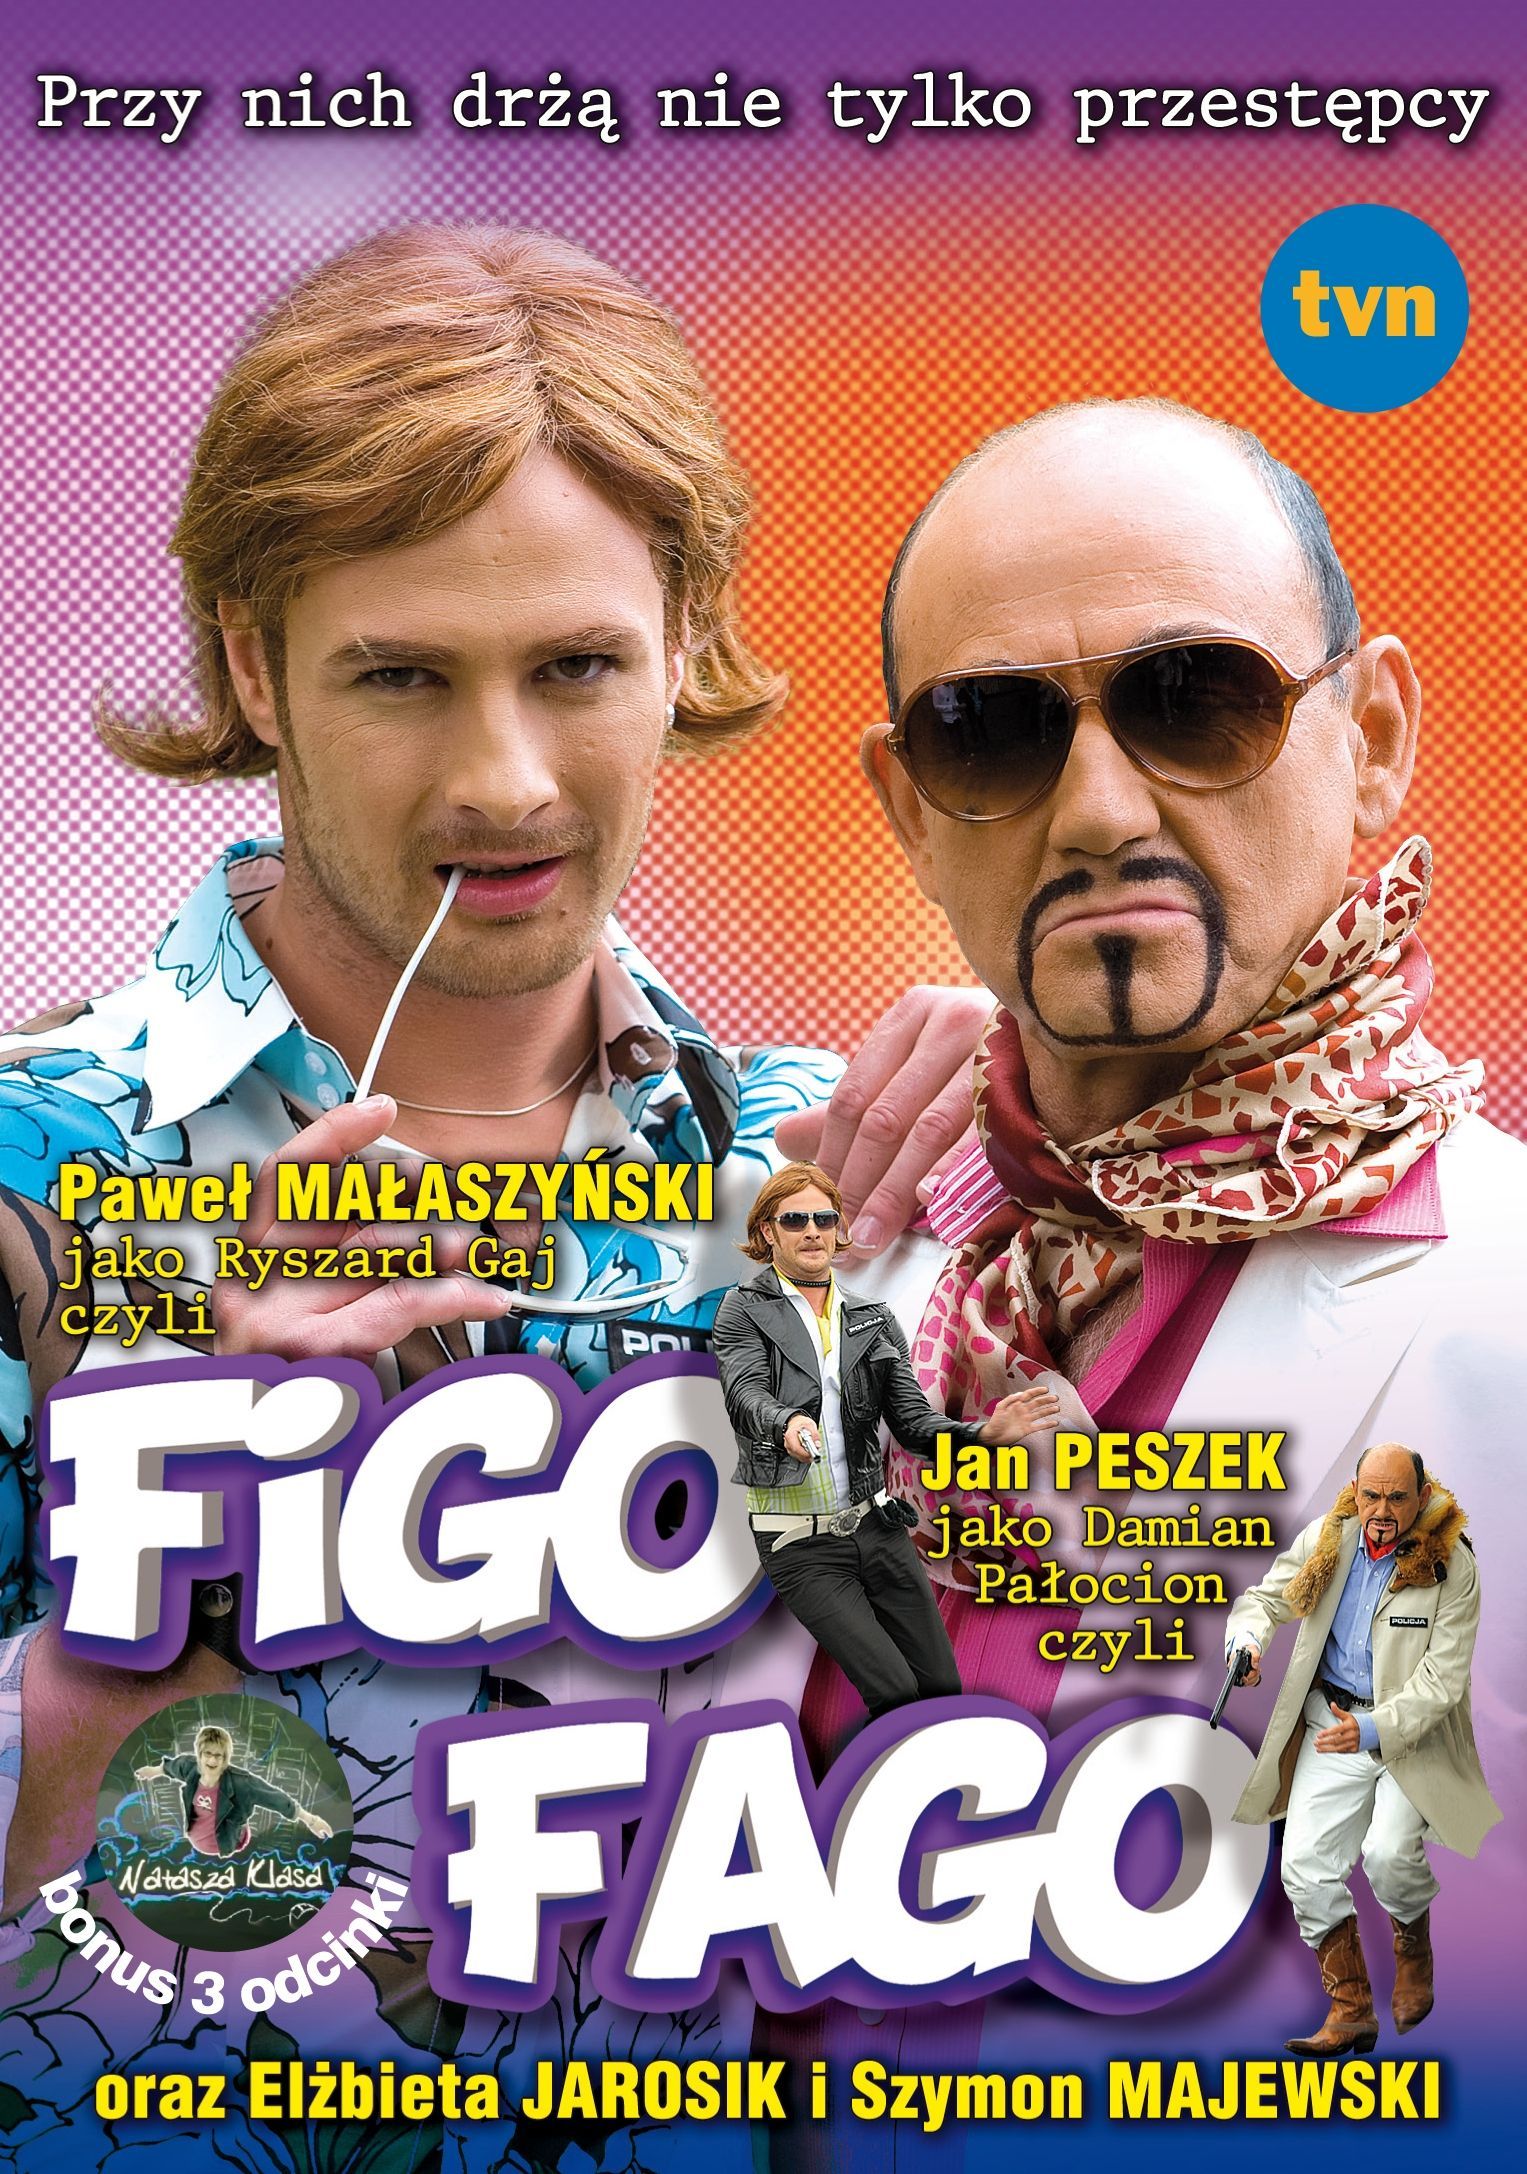 V/A - Figo Fago 420729 (5906409802007)